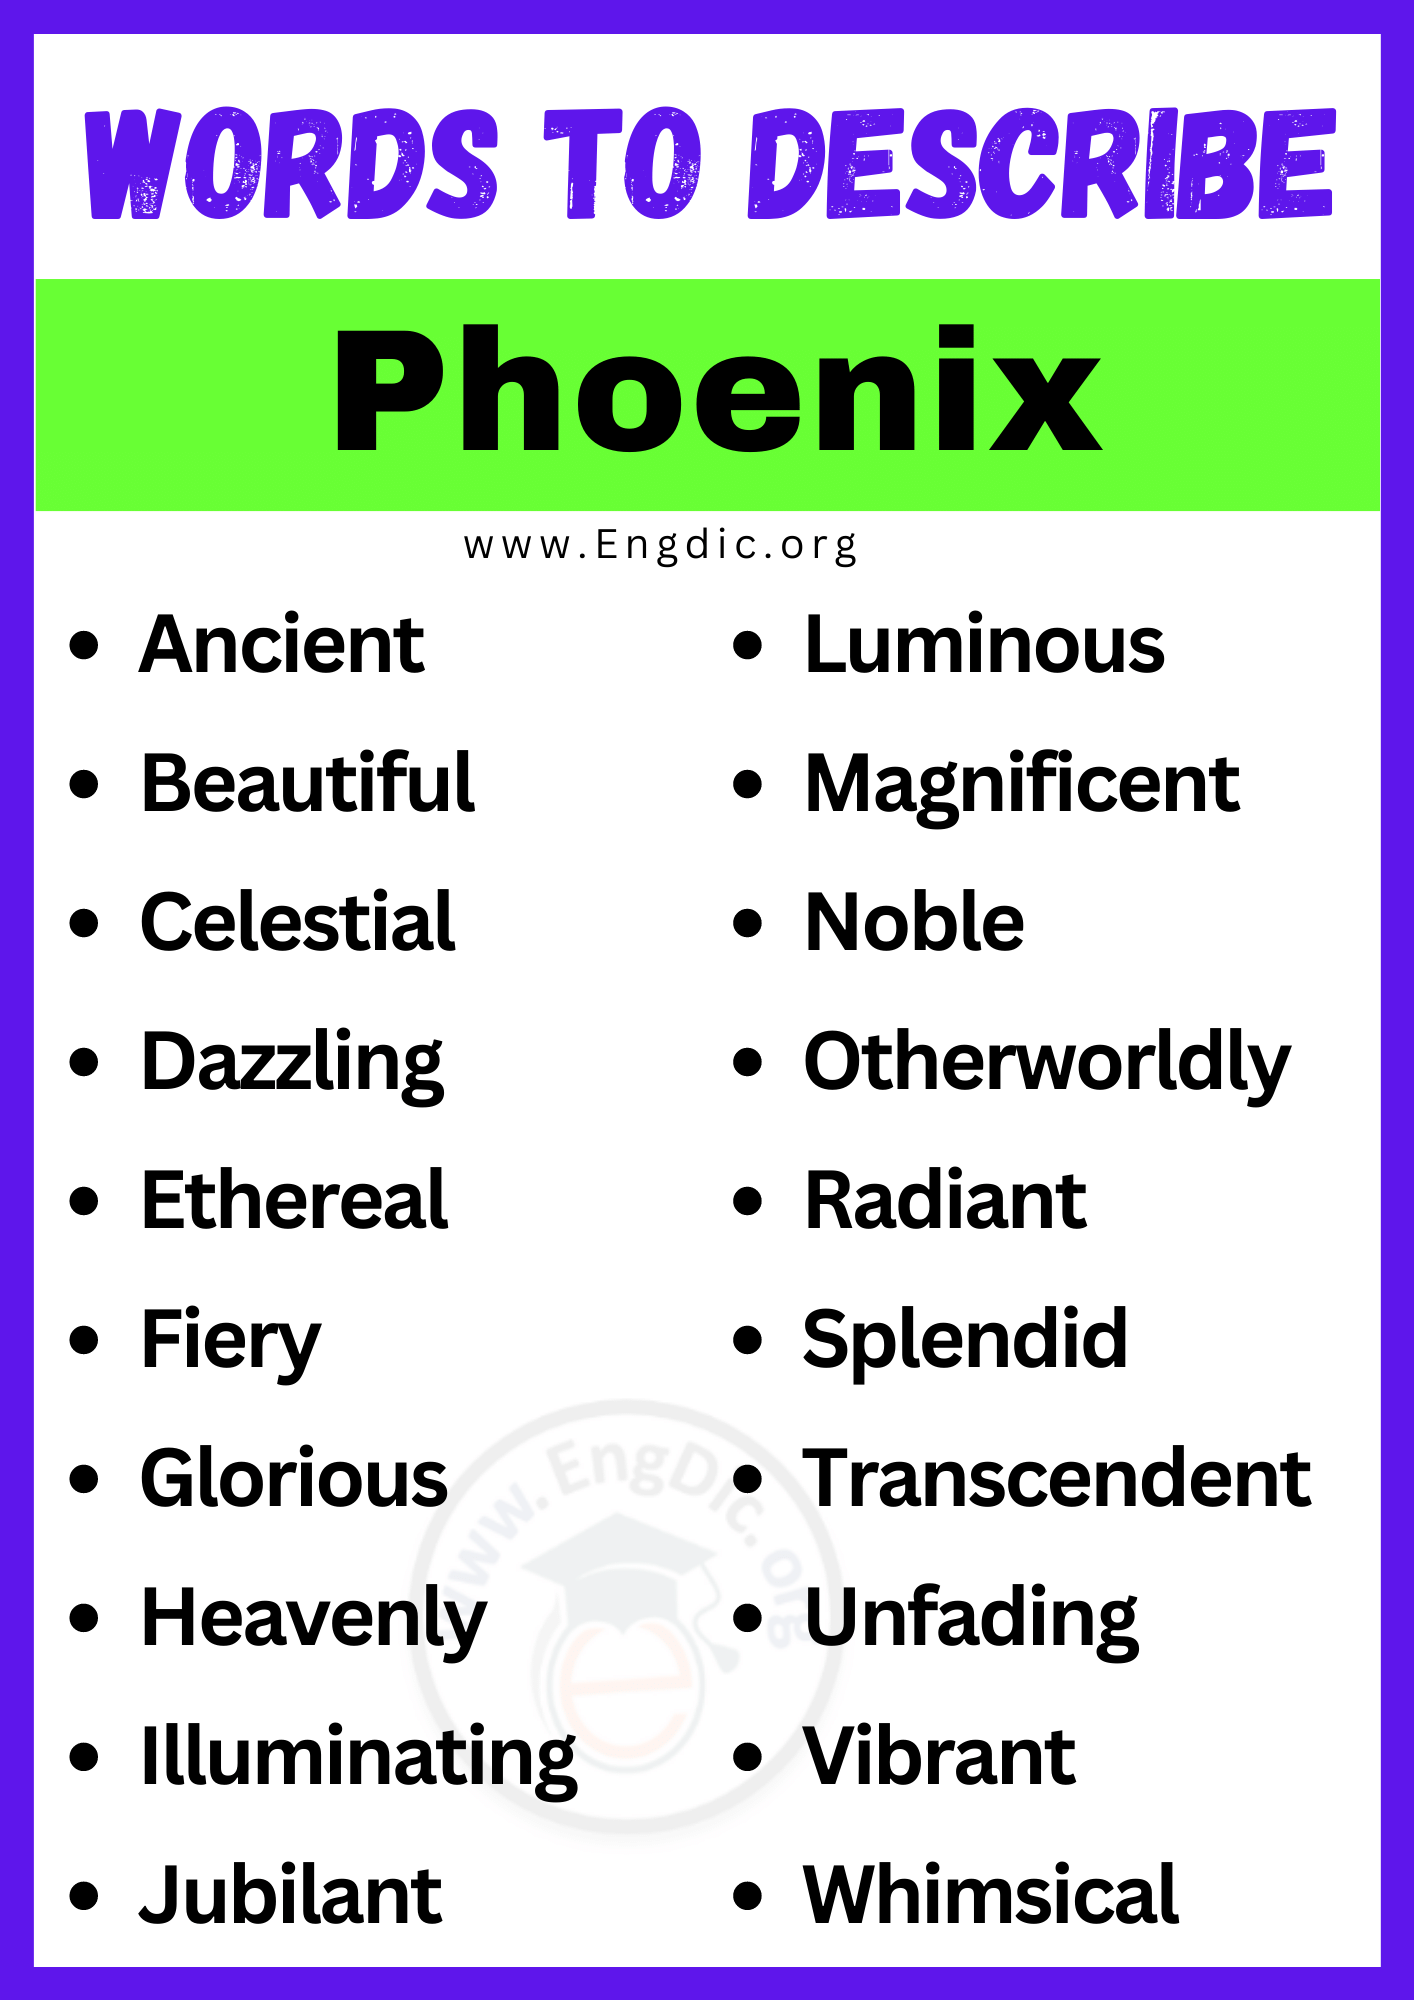 Words to Describe Phoenix